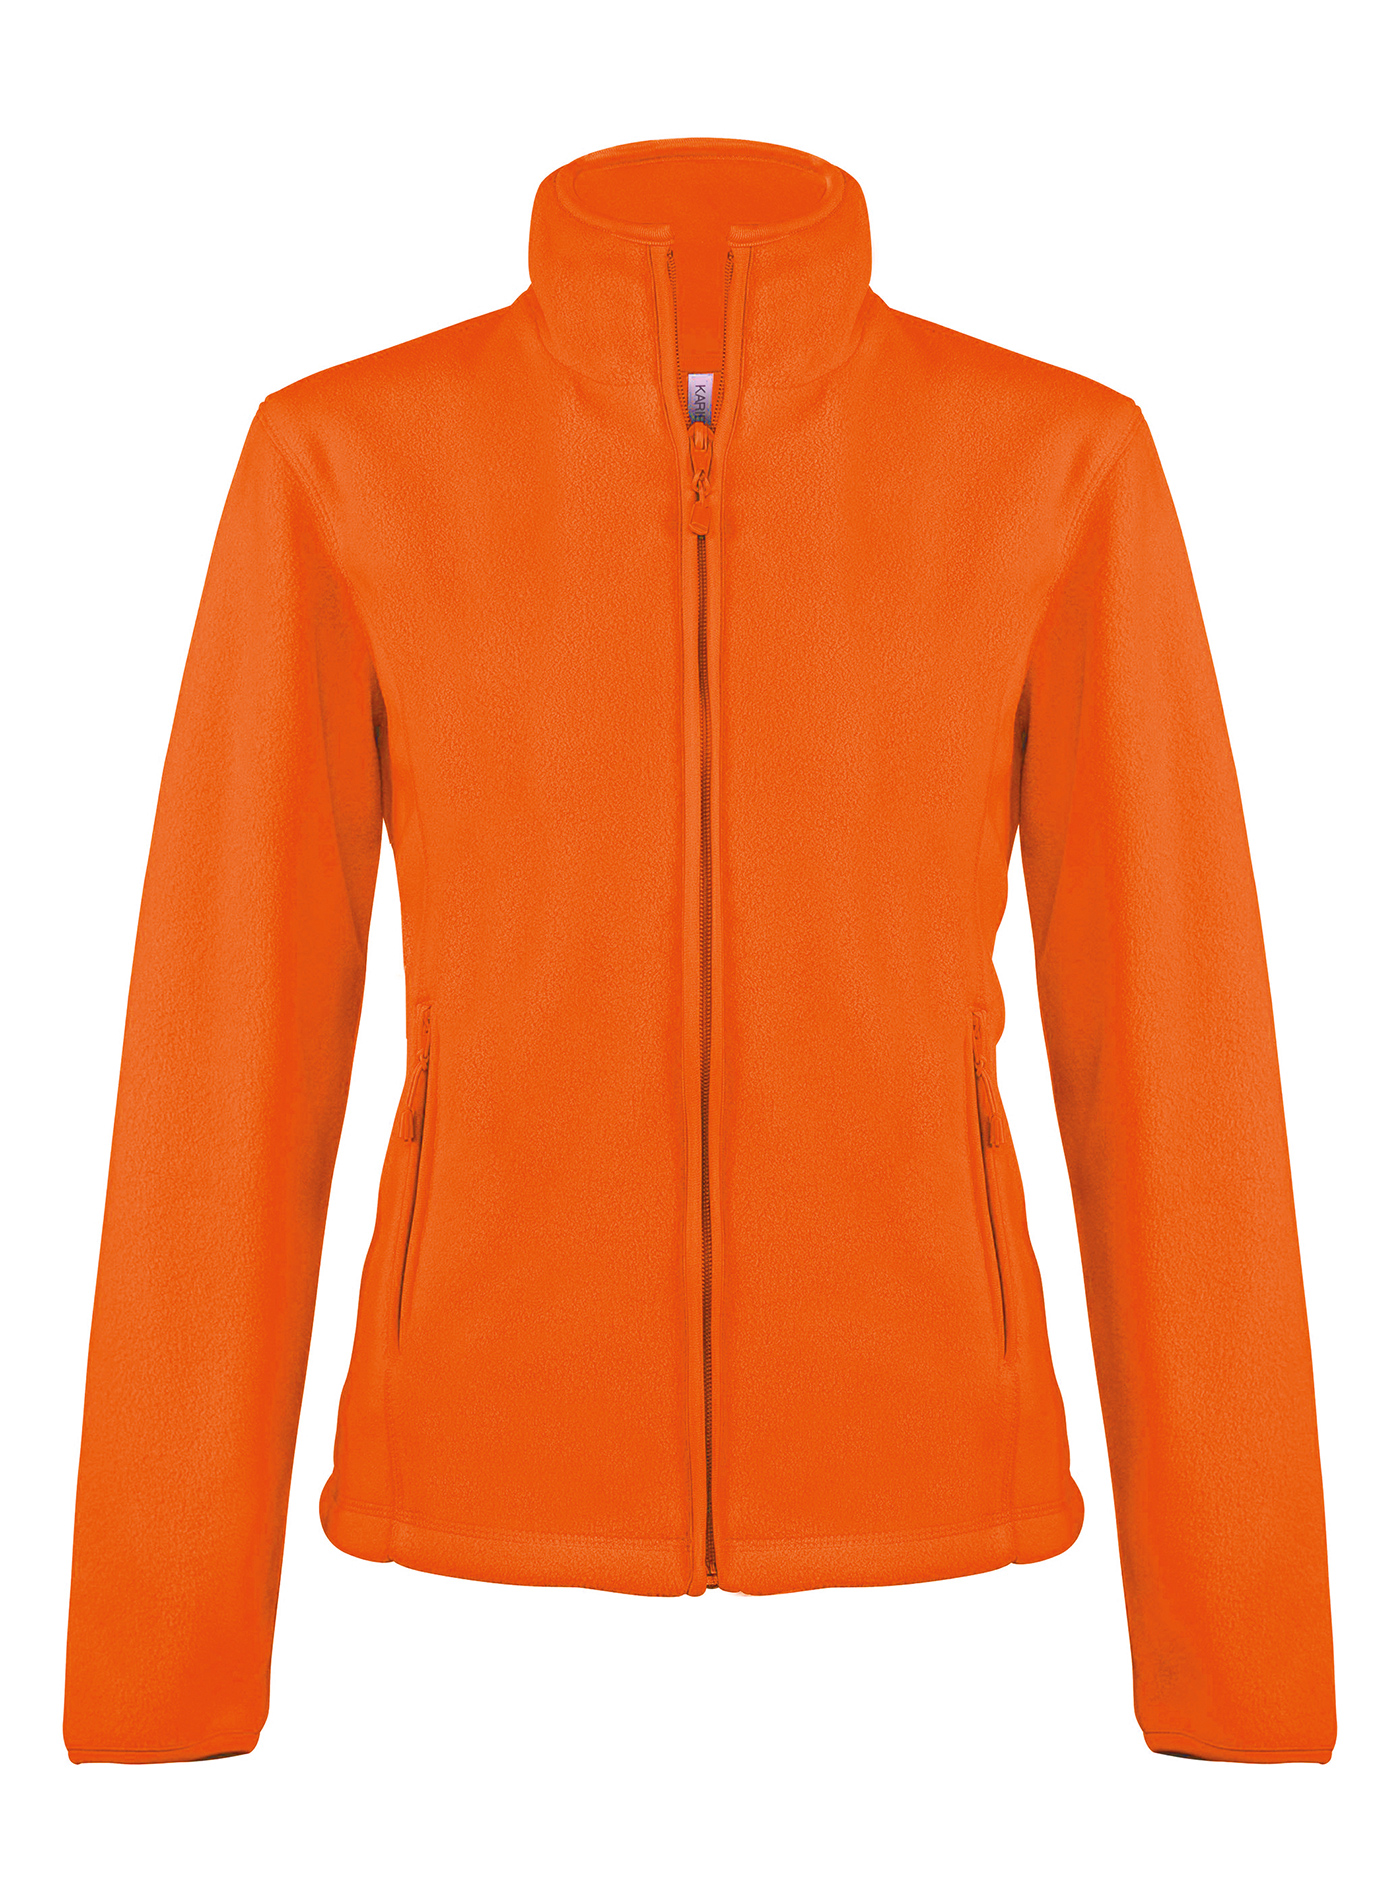 Dámská fleecová mikina Maureen - Zářivá oranžová XL